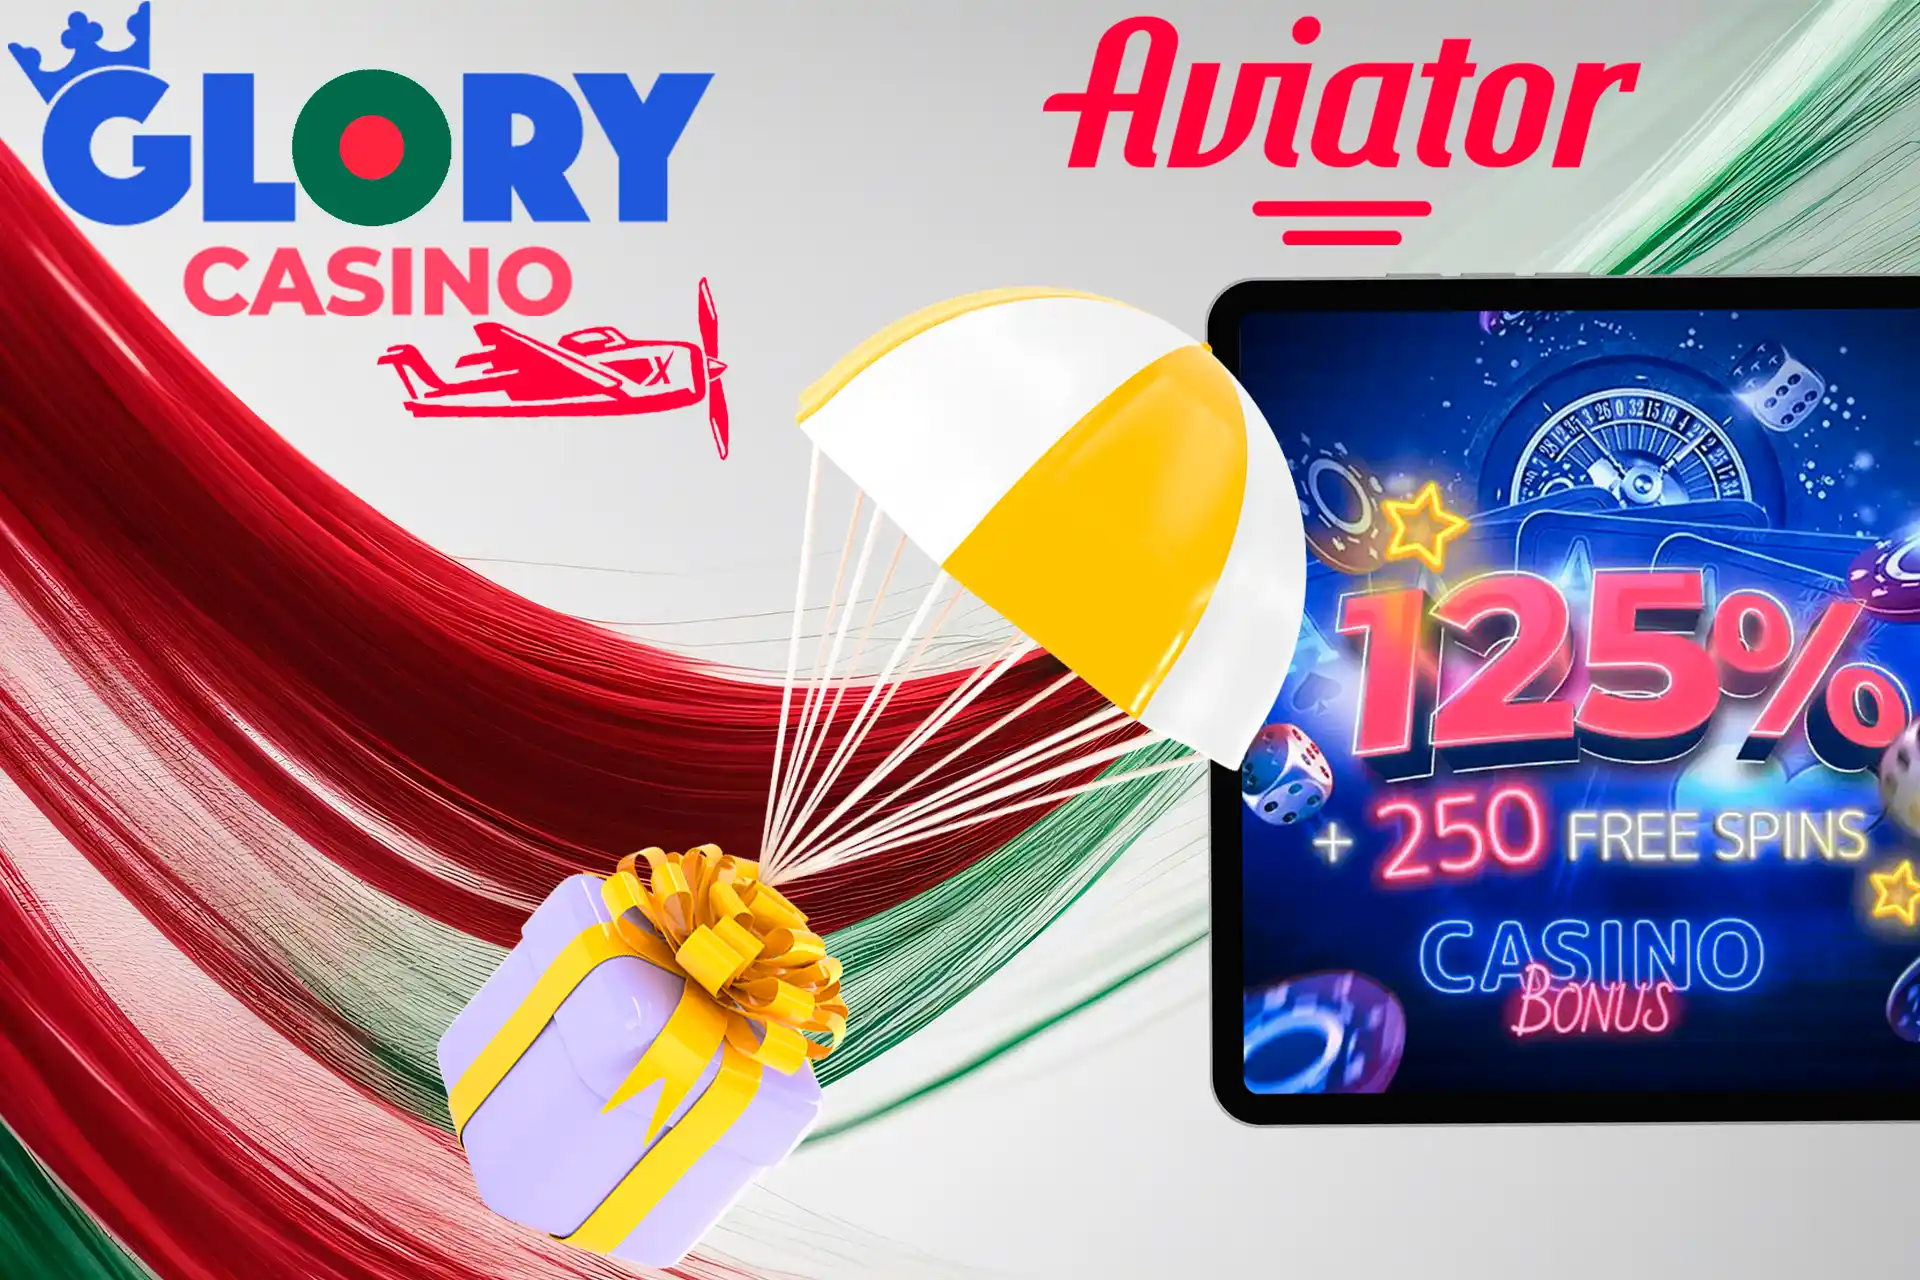 Main bonus at Glory Casino Bangladesh